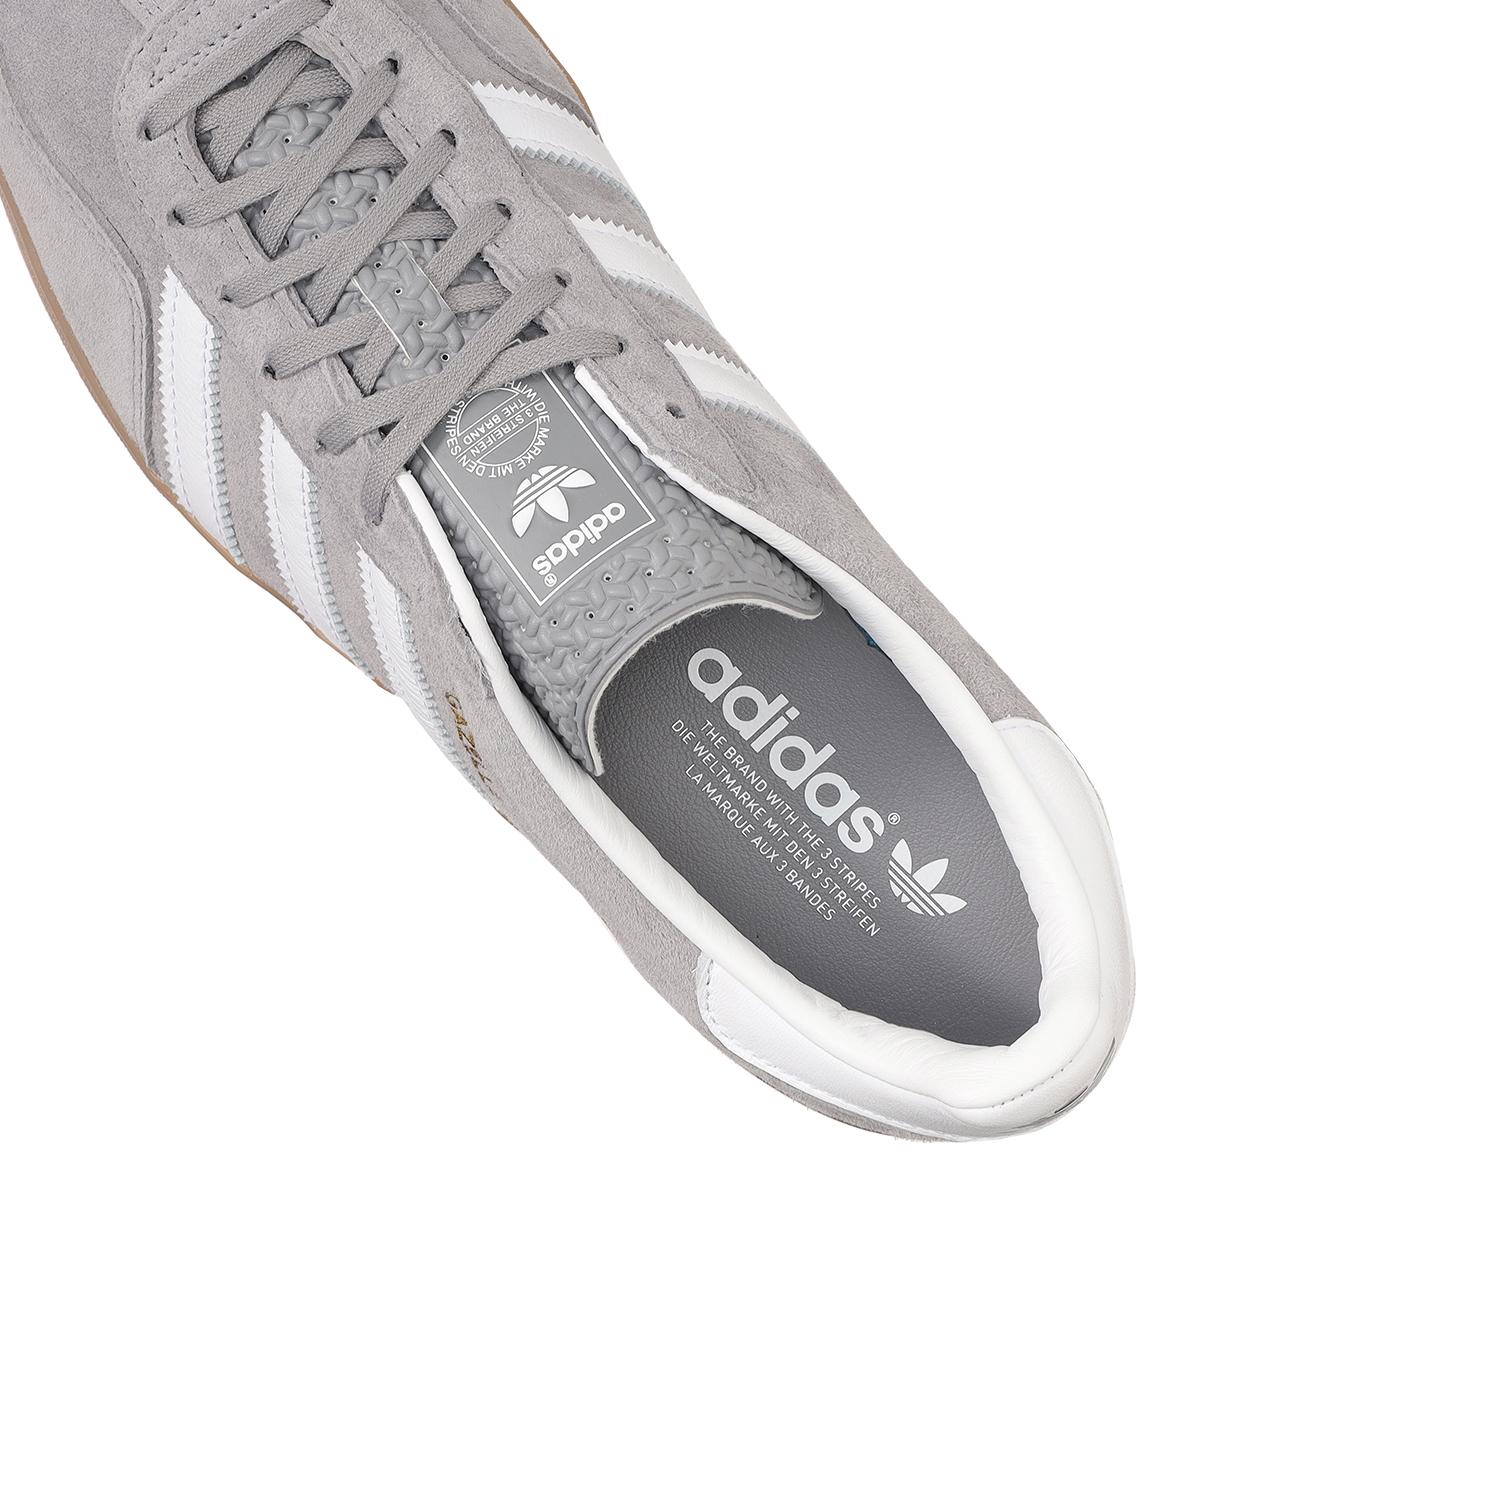 Adidas Gazelle Indoor 6H 24.5 新品